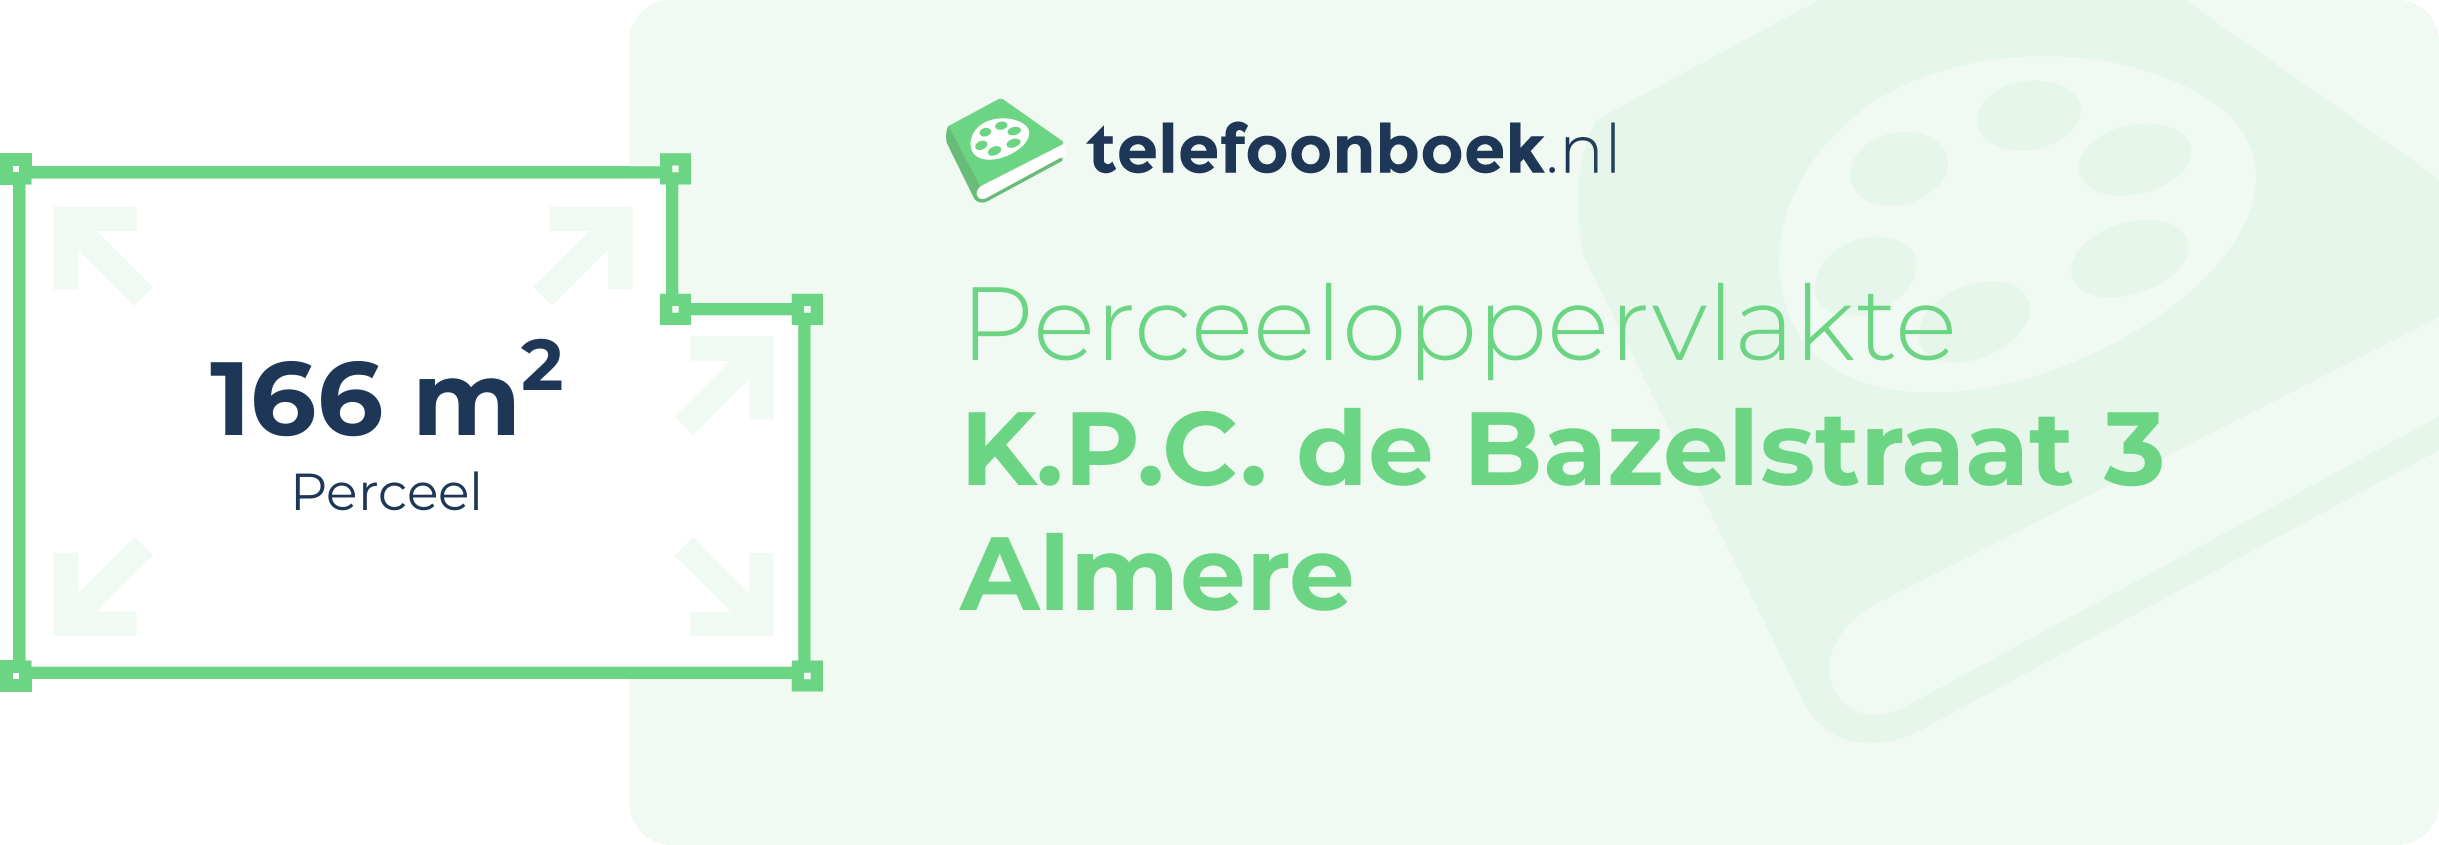 Perceeloppervlakte K.P.C. De Bazelstraat 3 Almere